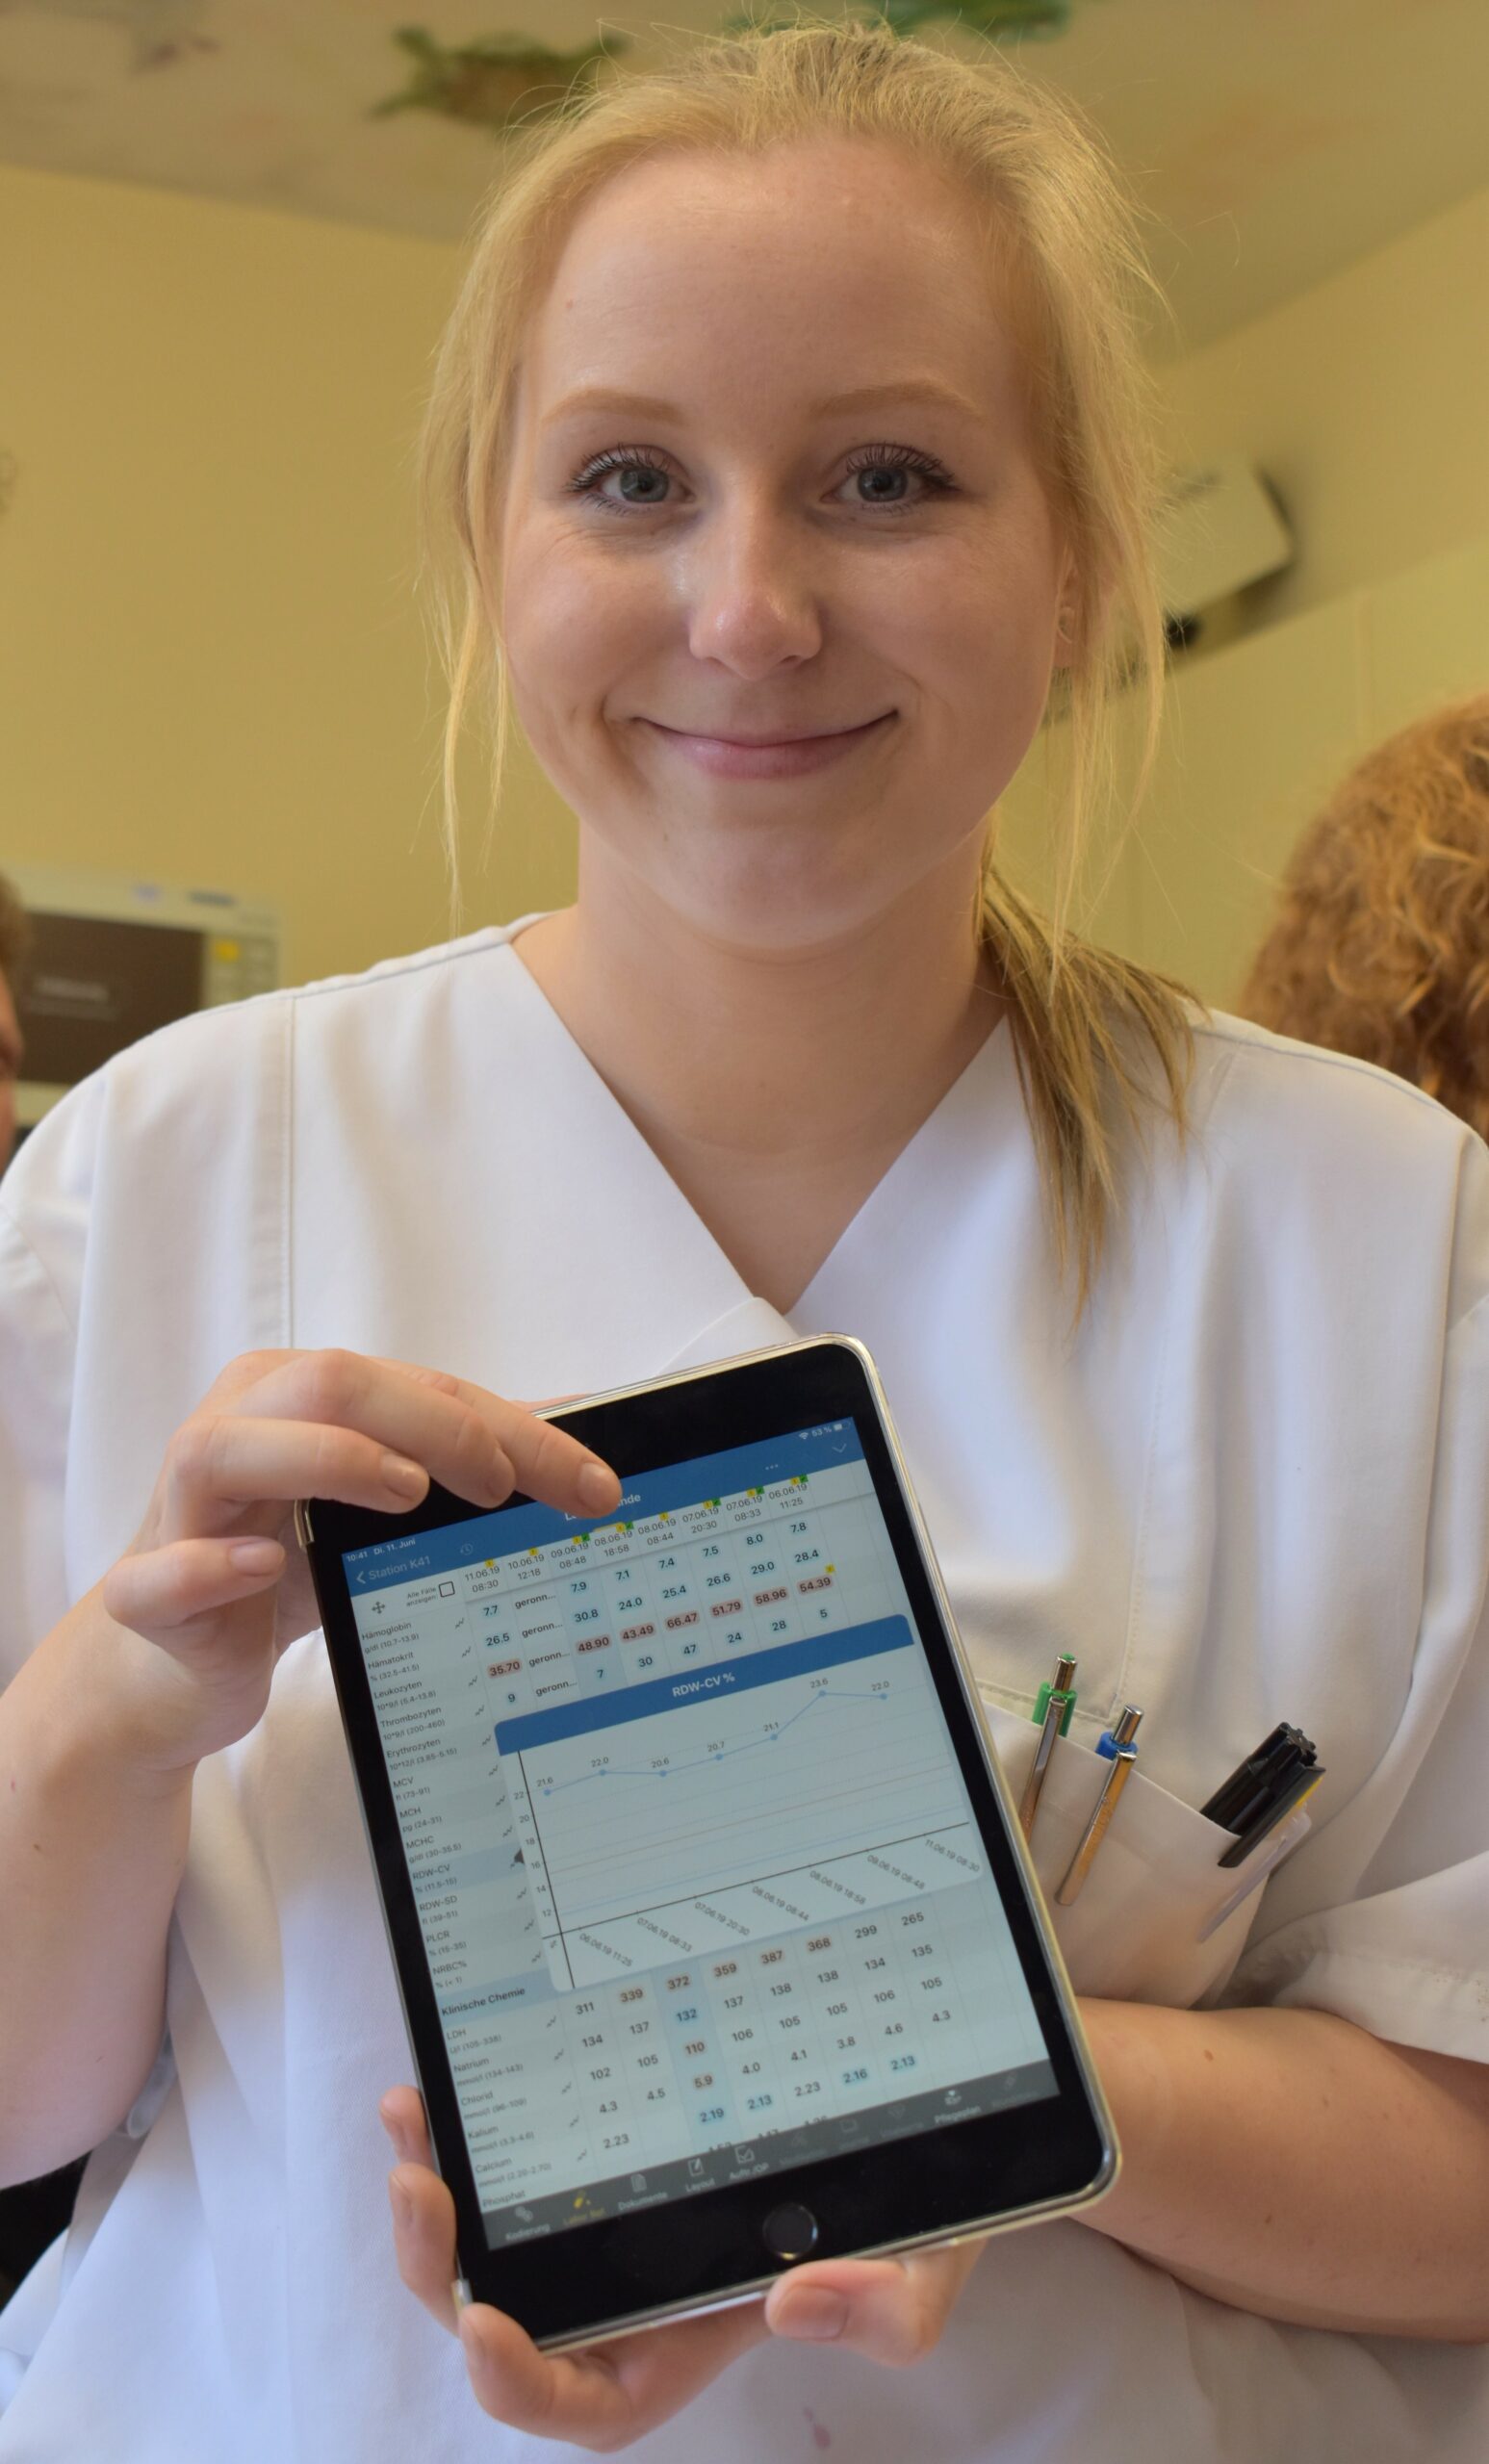 48 Stationen, über 900 iPads: Klinikum Dortmund rundum mit mobiler Patientenakte ausgestattet